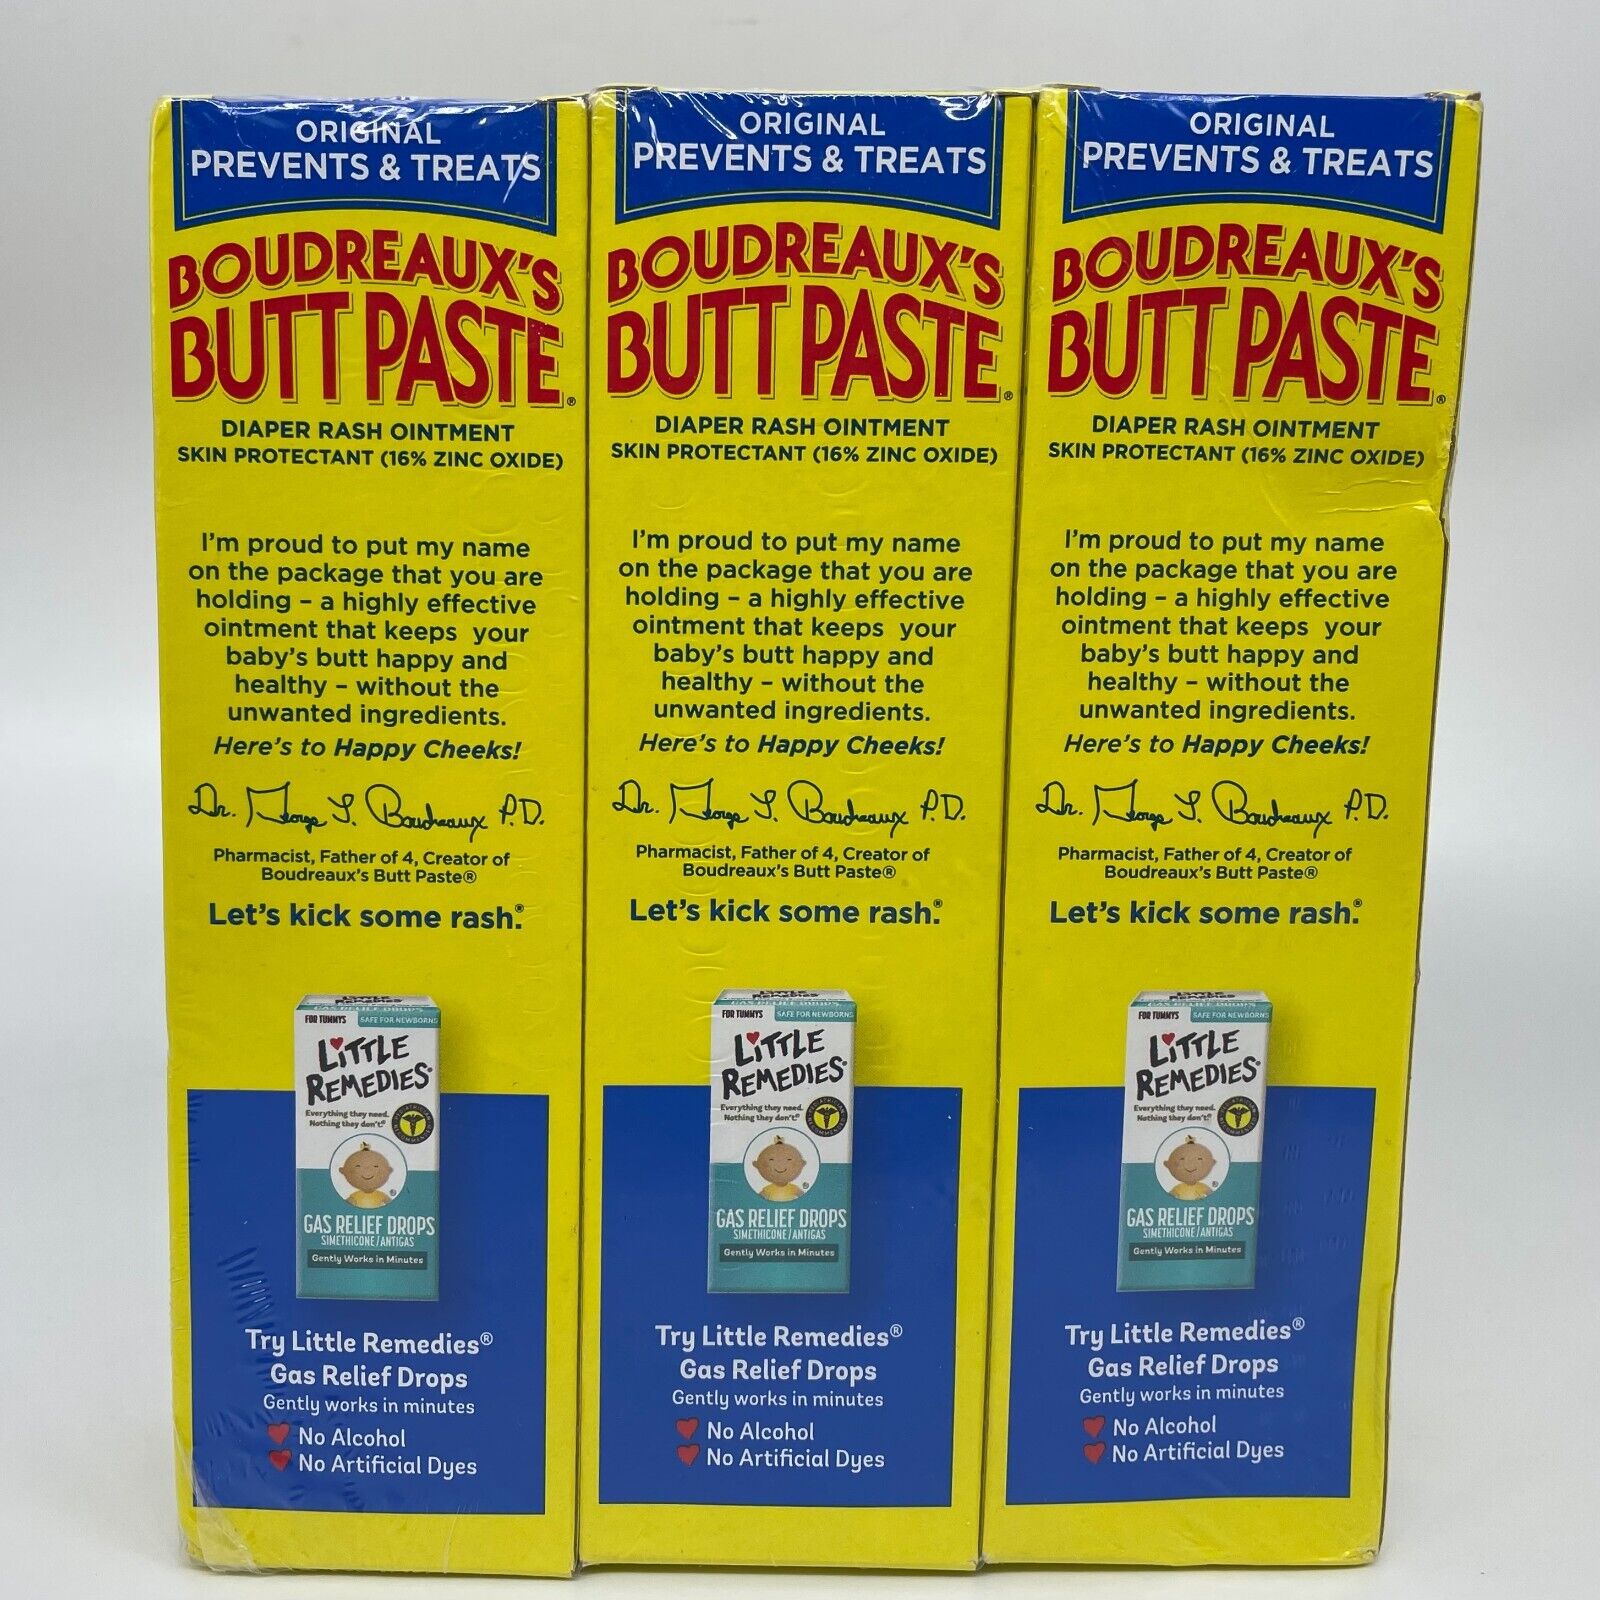 Boudreaux's Butt Paste Origina Diaper Rash Ointment 4oz Tube 6PK. 2/24+ Boudreaux's Does Not Apply - фотография #2